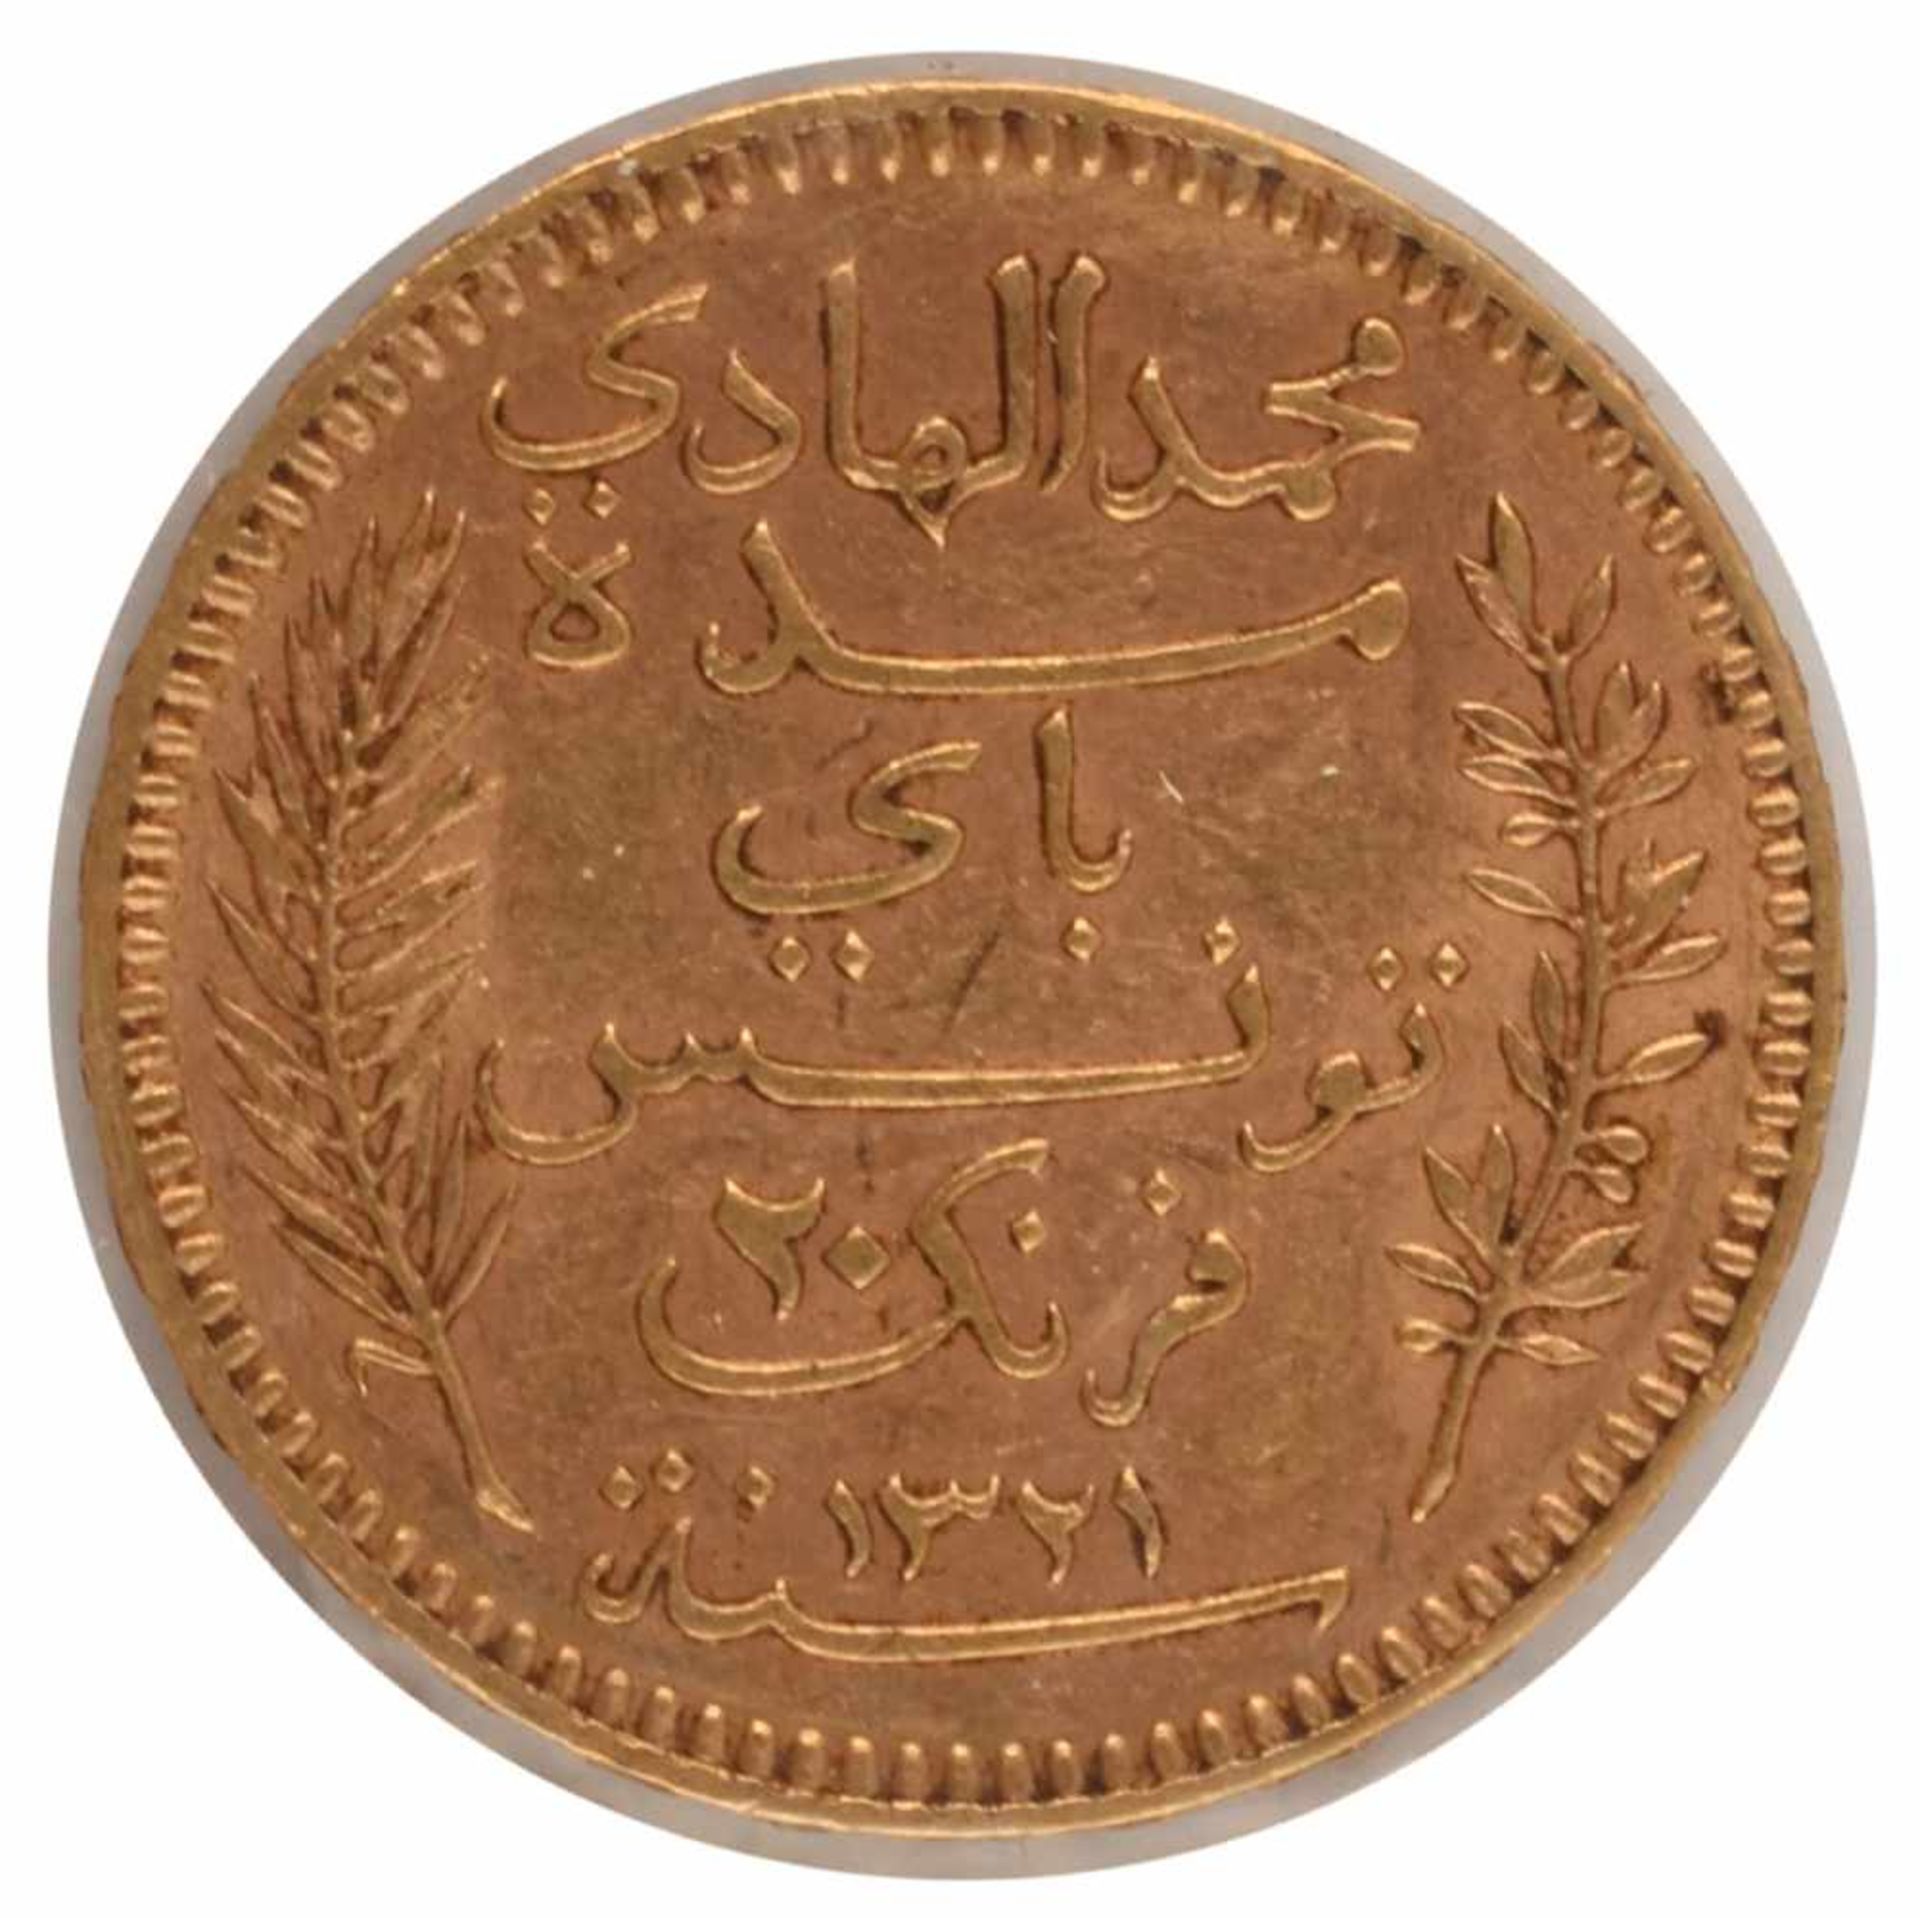 Goldmünze Tunesien 1904 20 Francs in Gold, 900/1000, 6,45 g, av. Wertangabe und Arabesken, rv. - Bild 3 aus 3